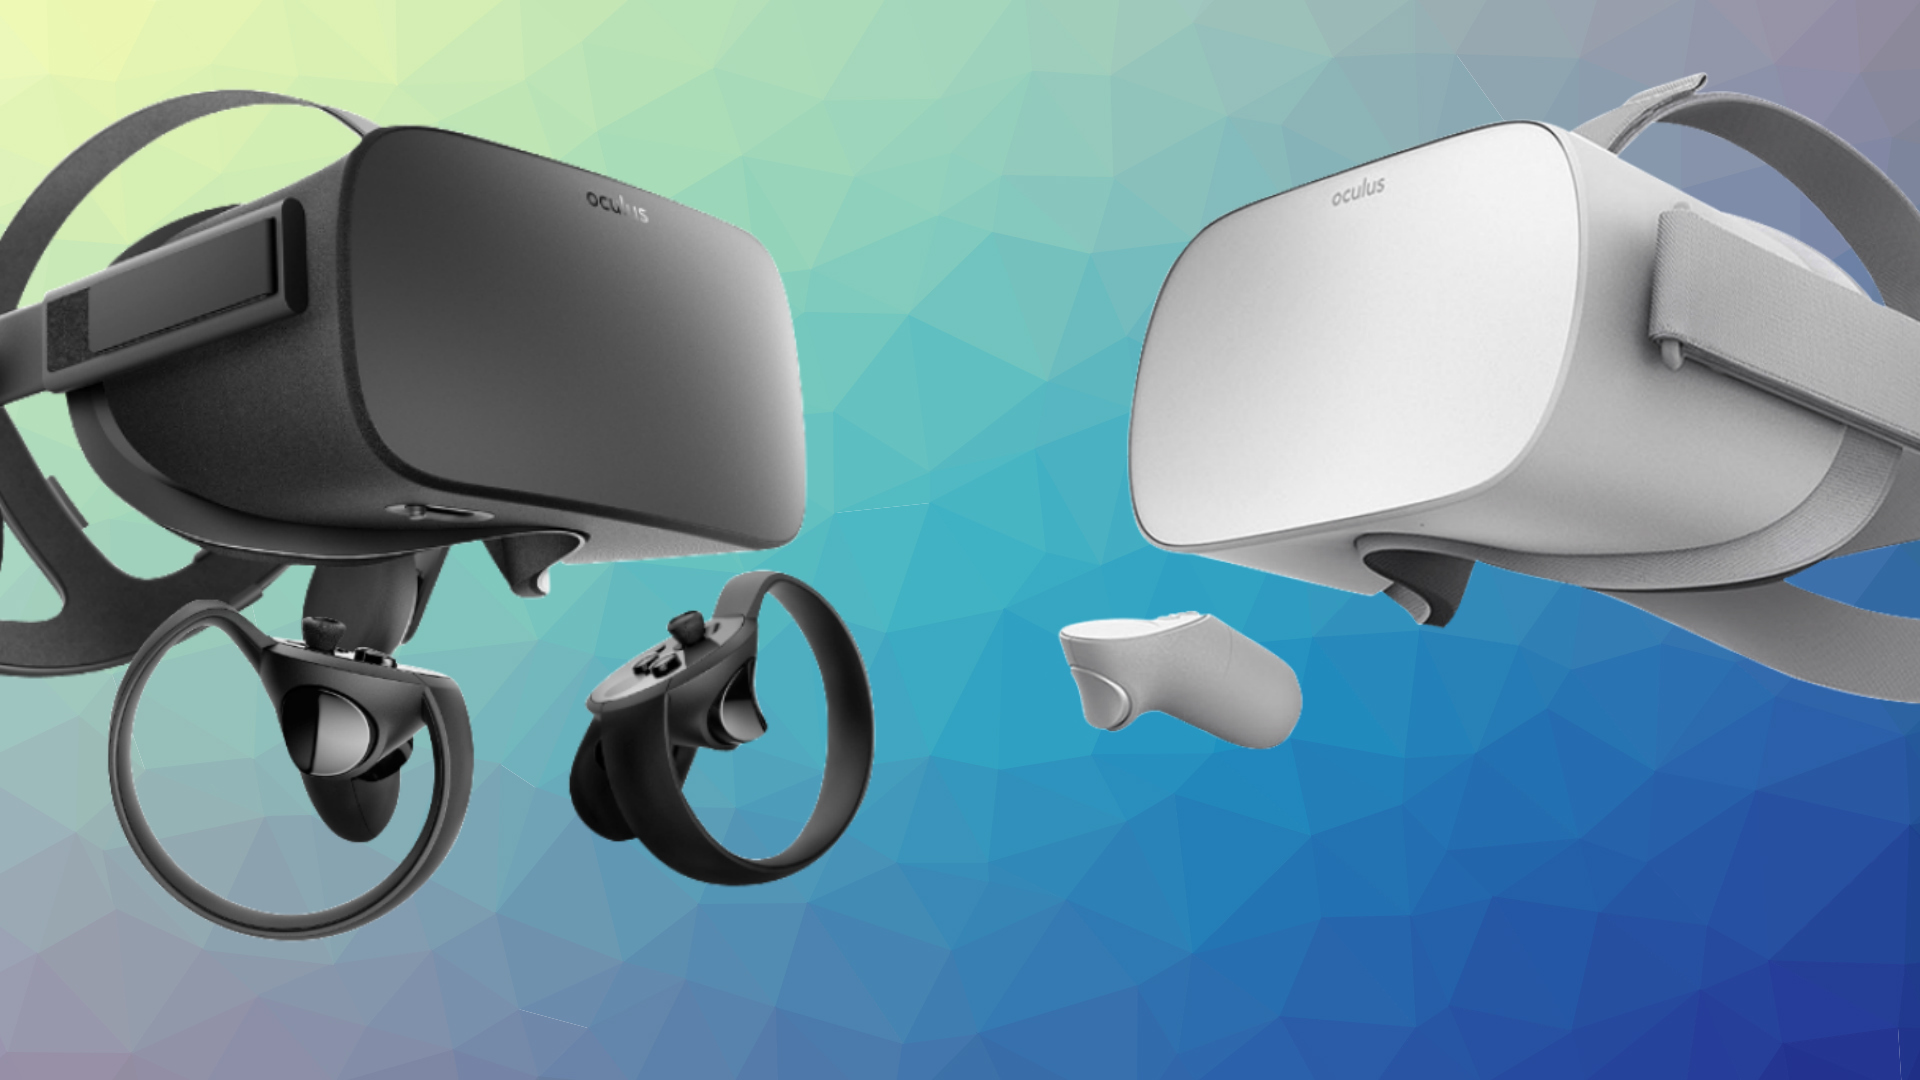 Black Friday 2018: VR headset deals including PSVR, Oculus Go, and Oculus  Rift